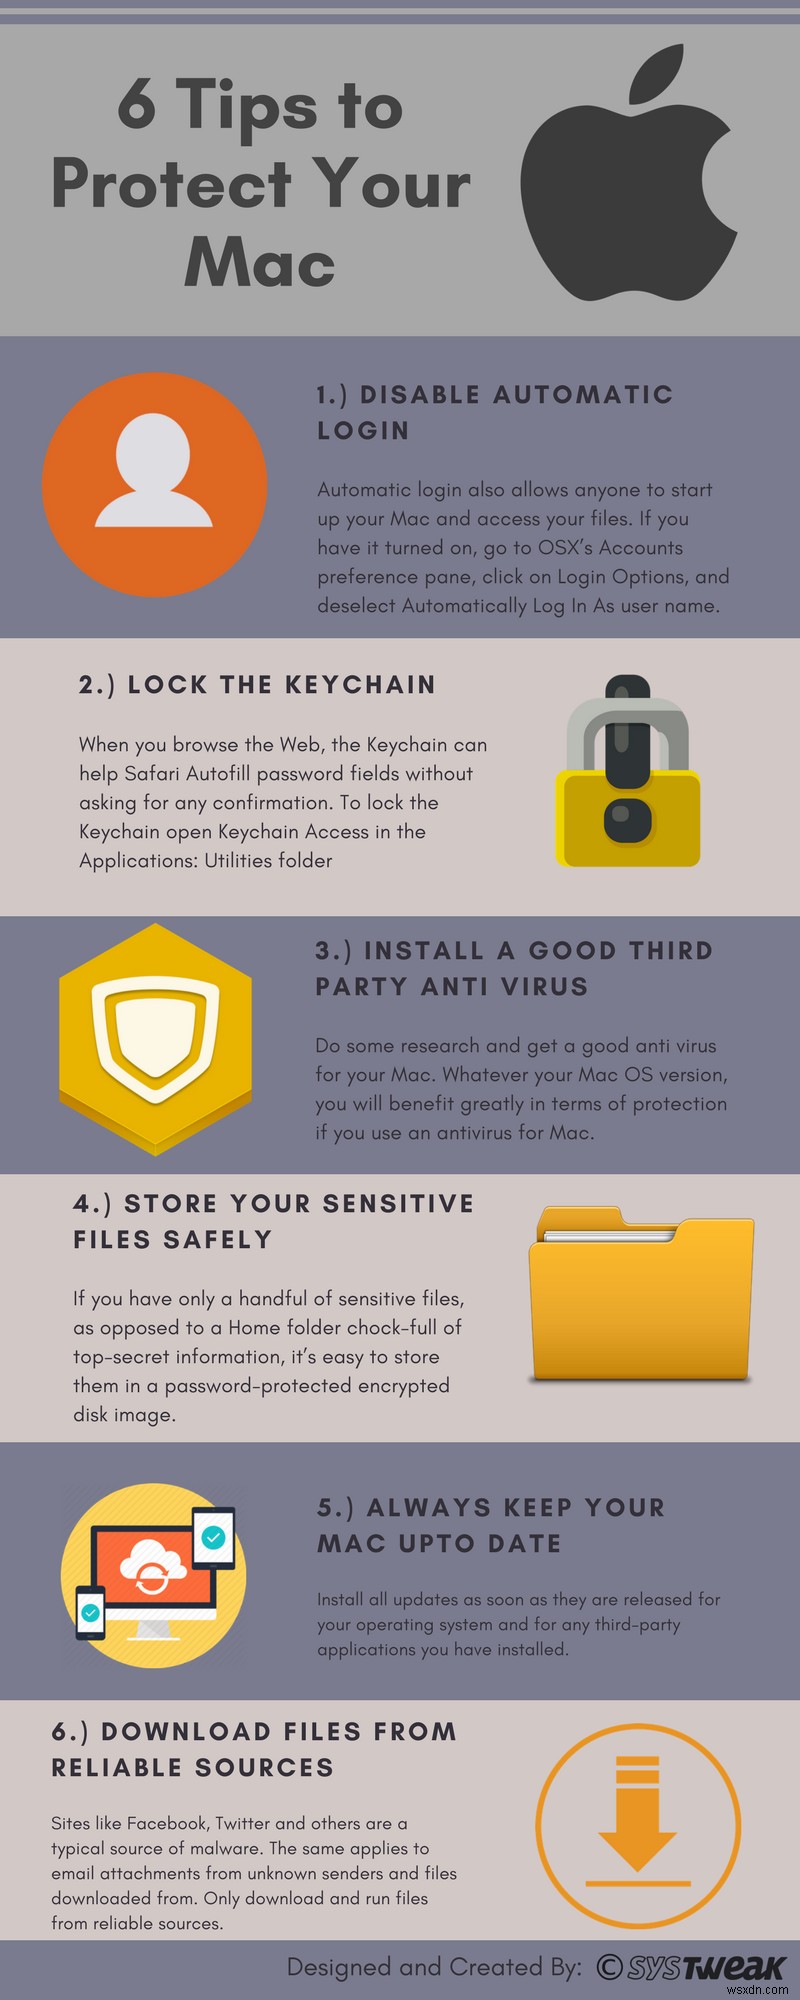 6 युक्तियाँ आपके Mac को सुरक्षित रखने के लिए - Infographic